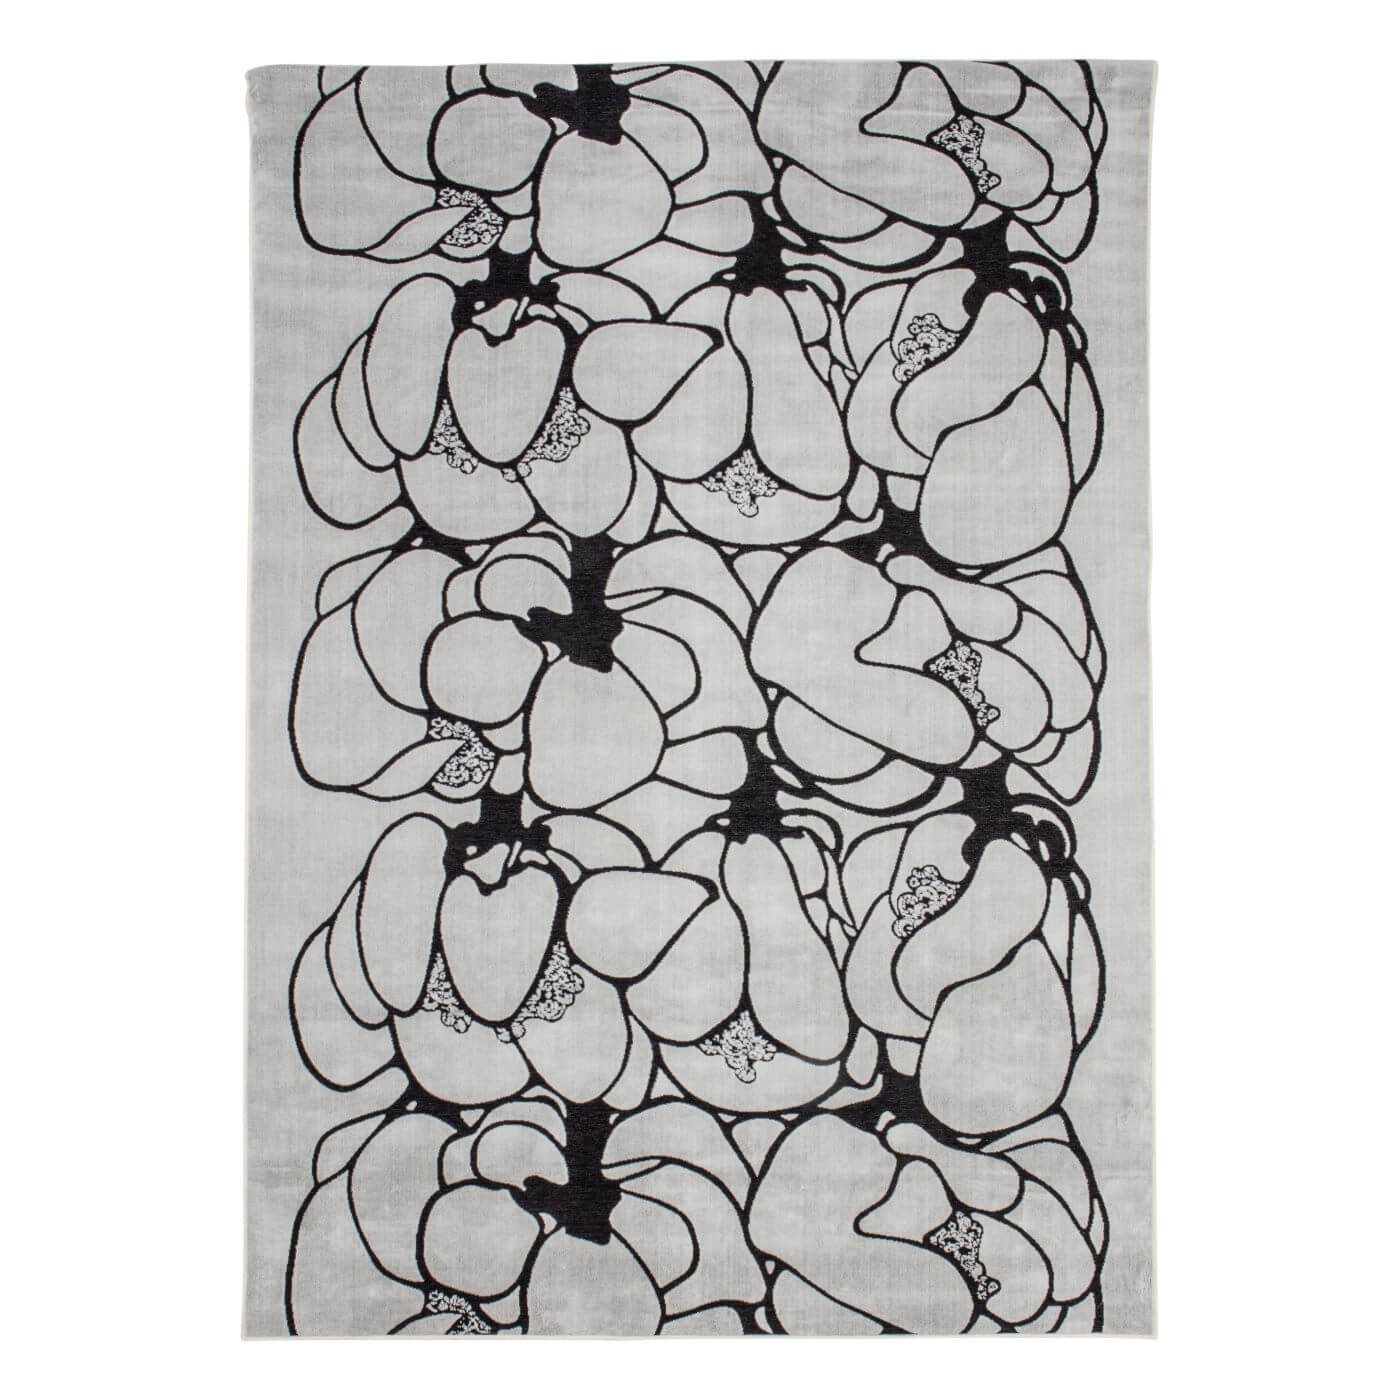 Dywan design MAKEBA. Designerski dywan biały z czarnym wzorem w duże kwiaty z krótkim włosiem przyjazny dla alergika. Nowoczesny dywan do salonu o skandynawskim designie widoczny w całości